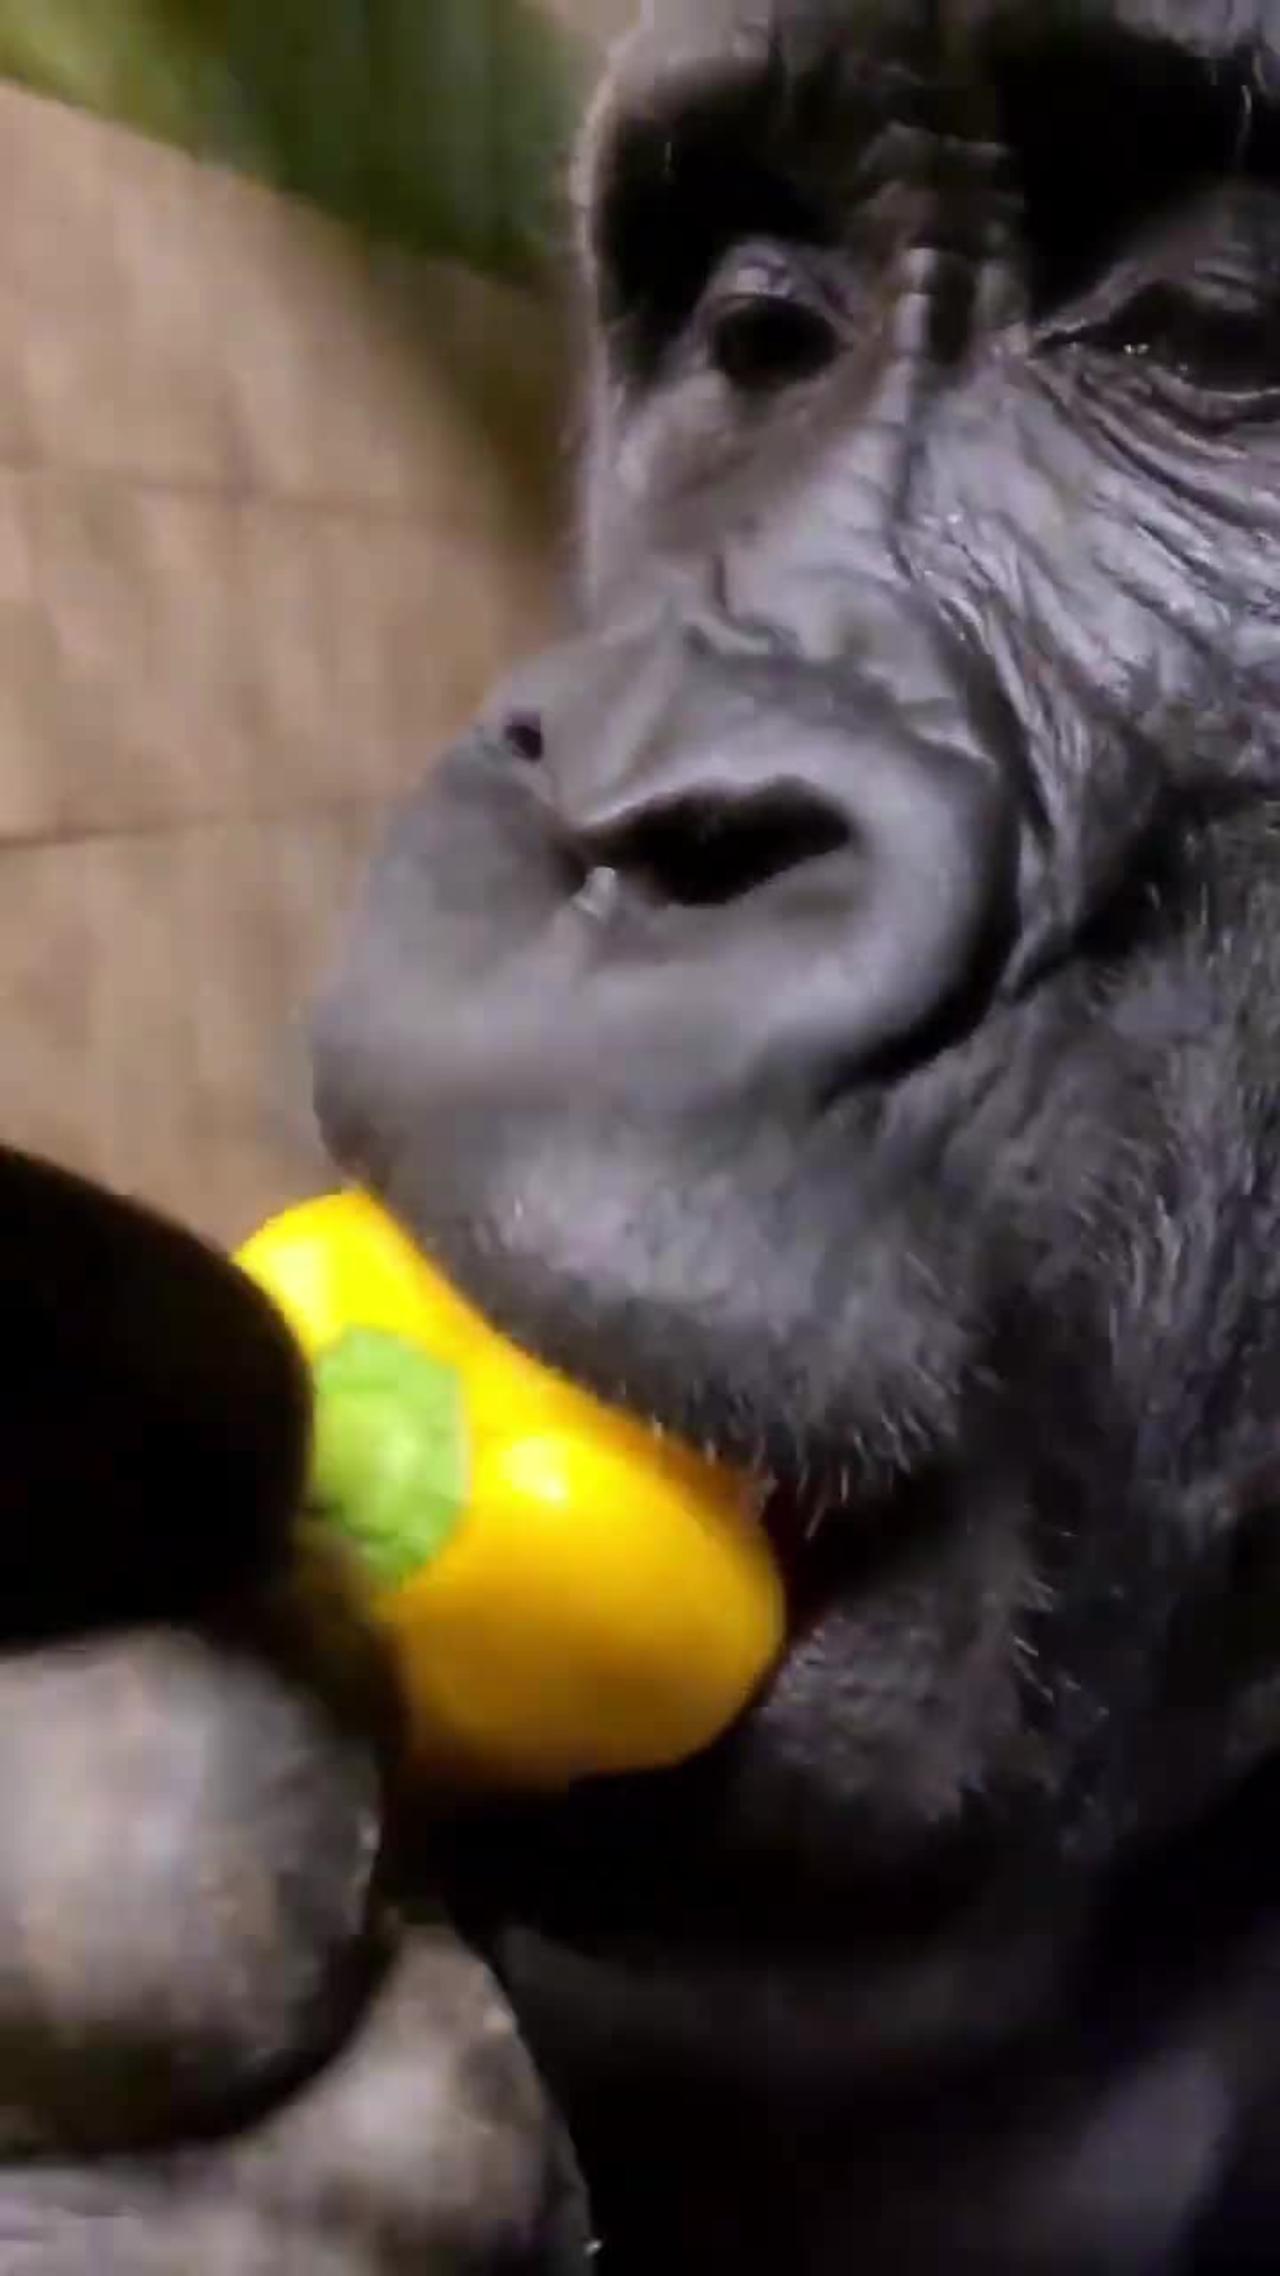 Gorilla eating up close! #gorilla #eating #asmr #satisfying